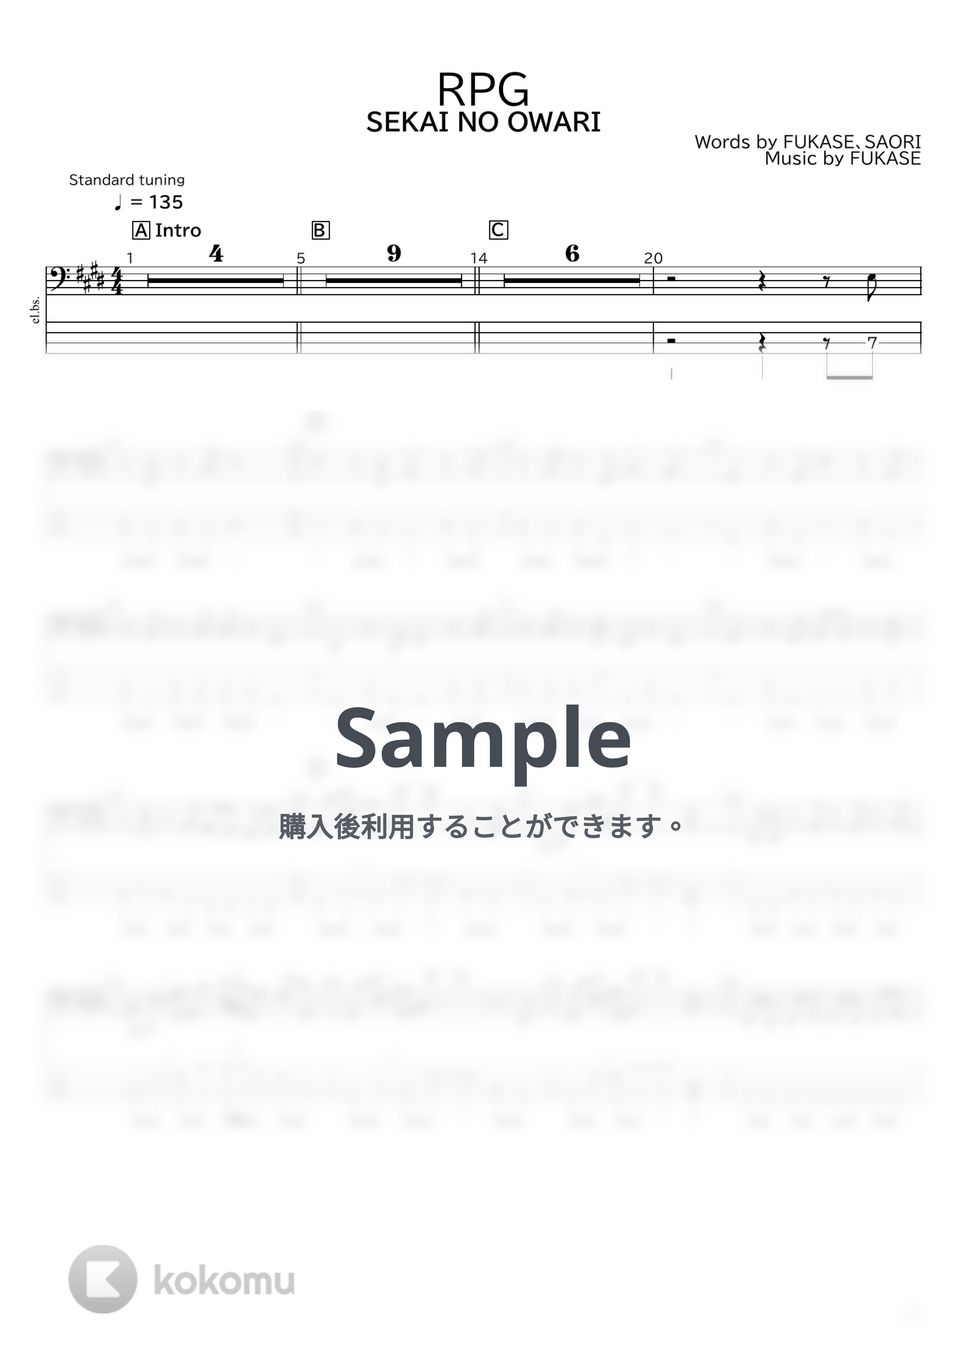 SEKAI NO OWARI - RPG by たぶべー@財布に優しいベース用楽譜屋さん